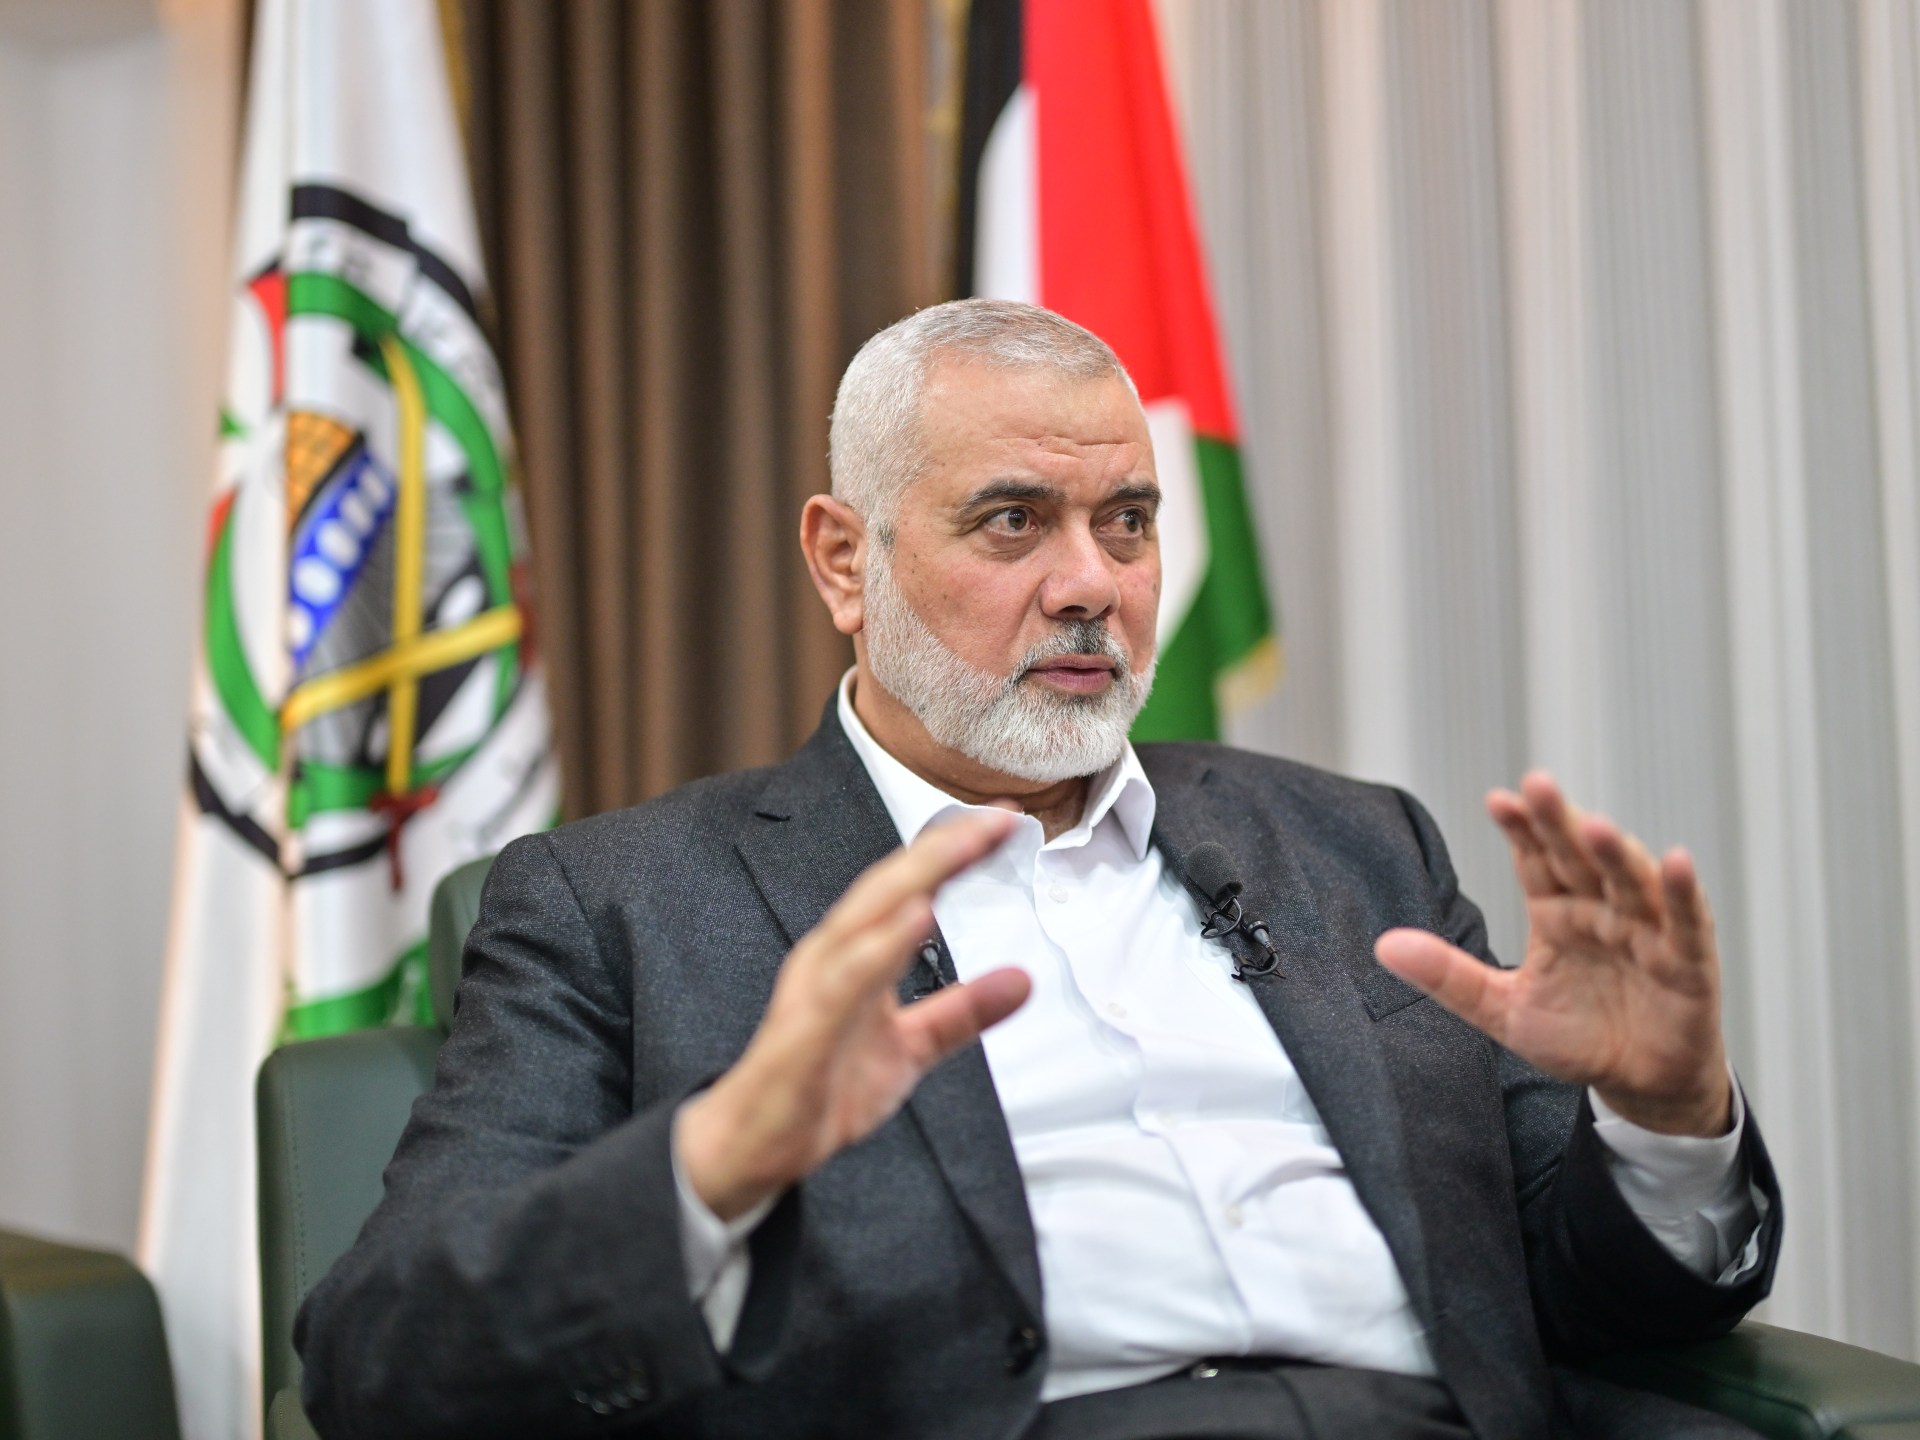 حماس تبحث مع فصائل فلسطينية مستجدات الحرب على غزة | أخبار – البوكس نيوز